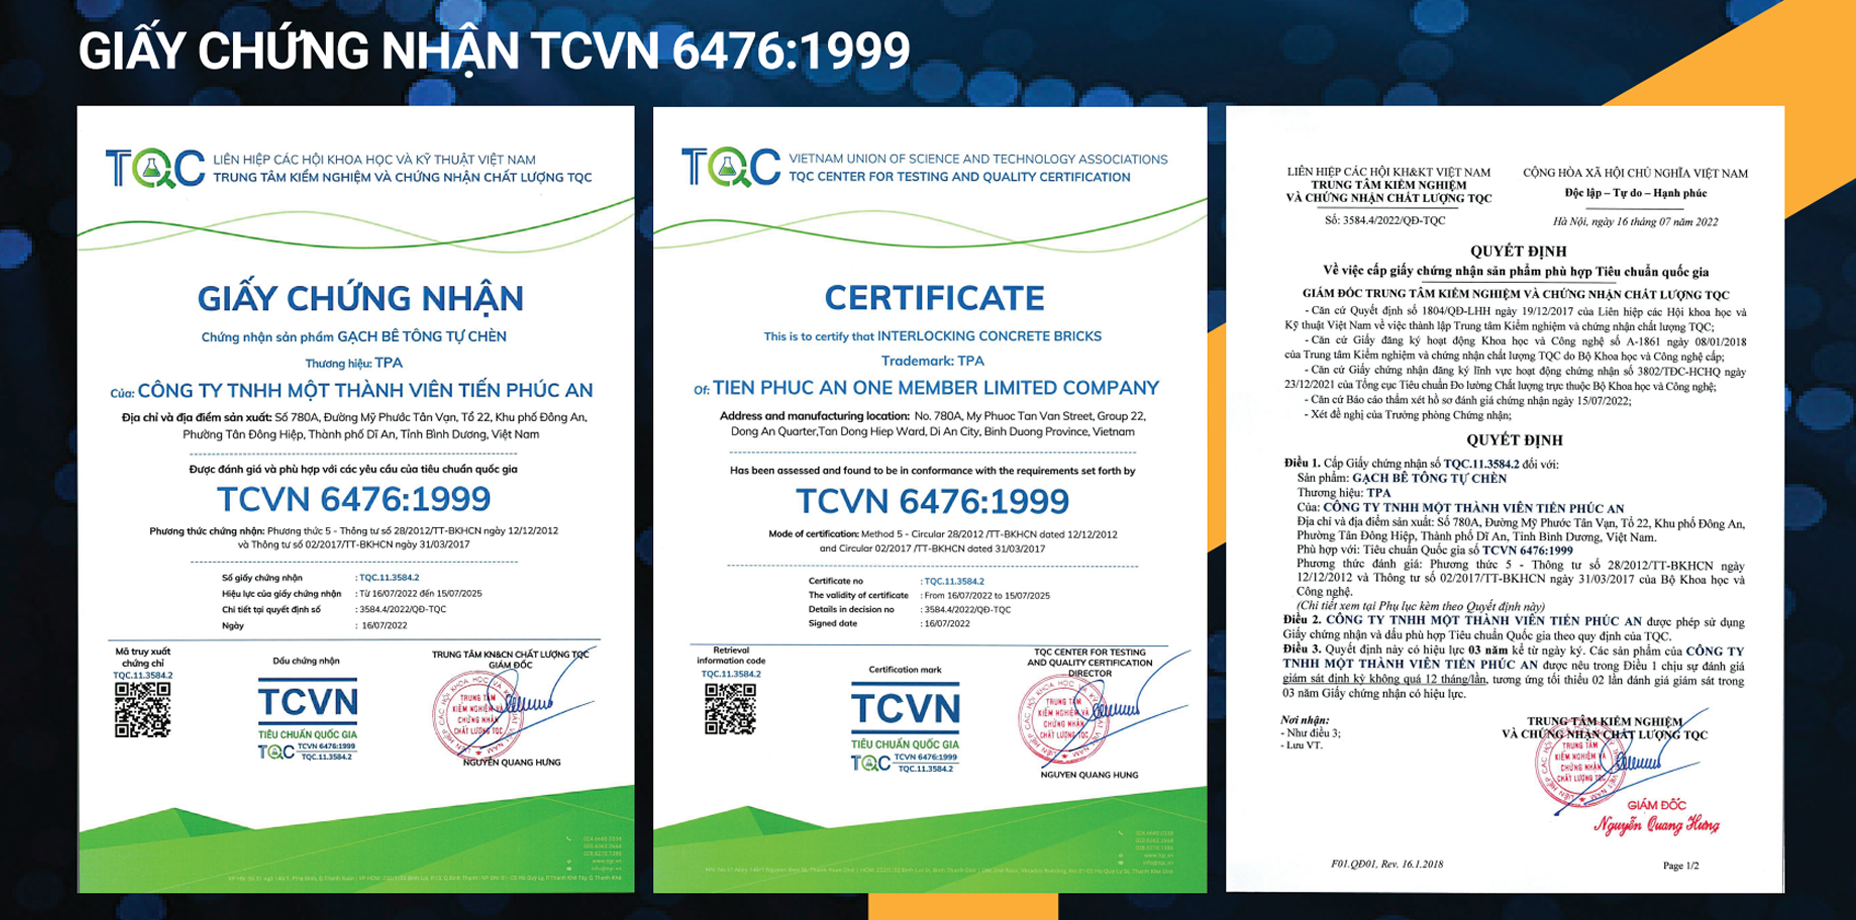 Giấy chứng nhận TCVN 6476:1999